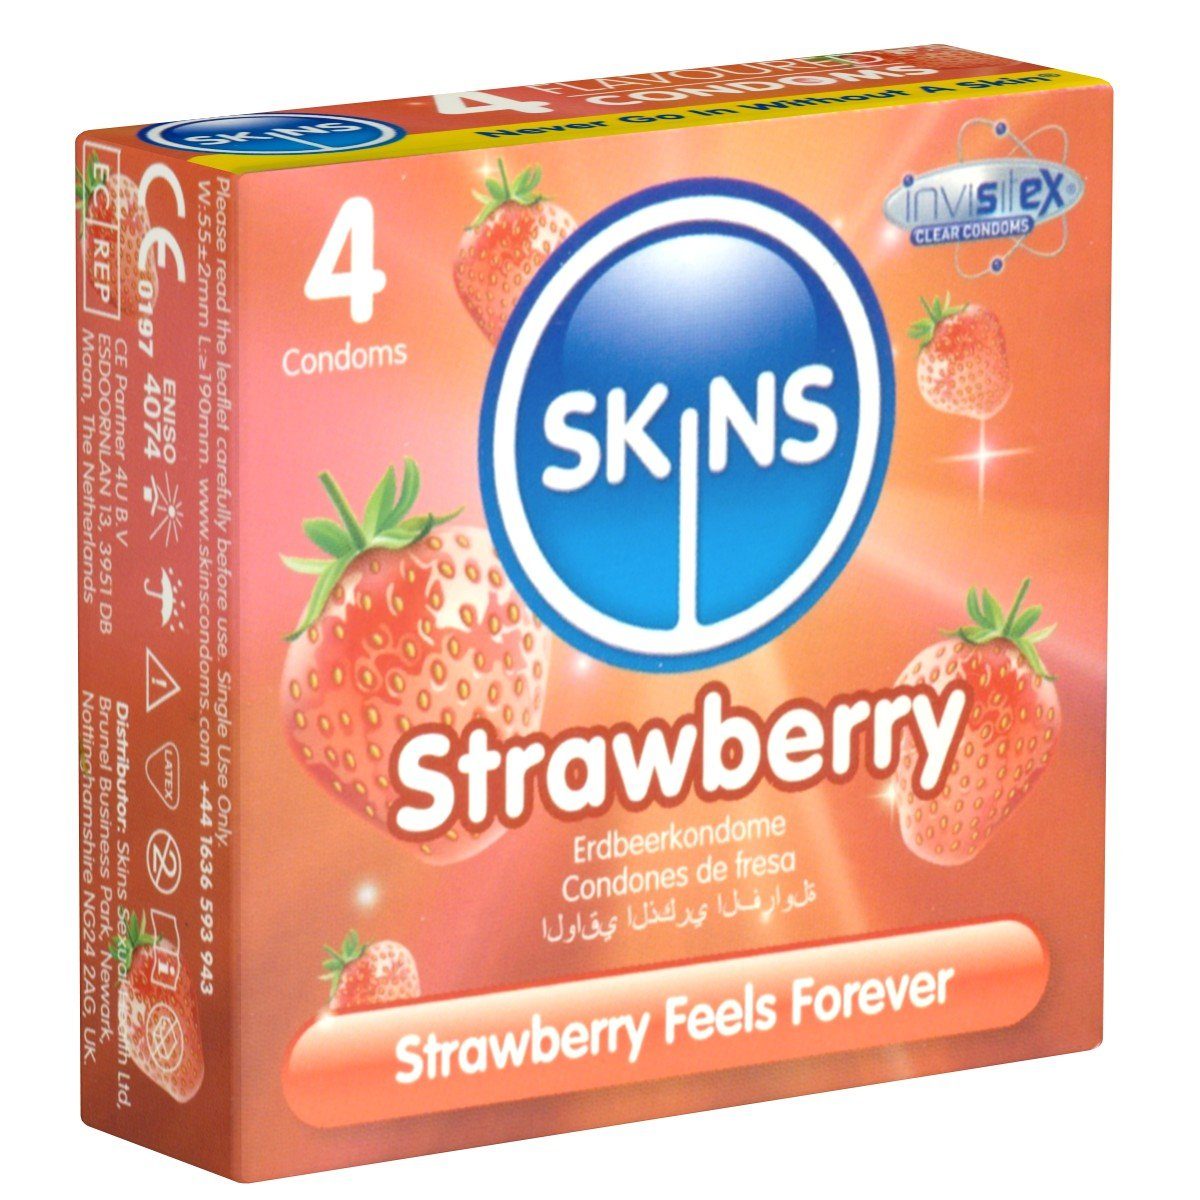 SKINS Condoms Kondome Strawberry, samtweiche Oberfläche, fühlt sich an wie "echt", Packung mit, 4 St., Kondome mit fruchtigem Erdbeeraroma, durchsichtiges Latex (kristallklar), kein Latexgeruch